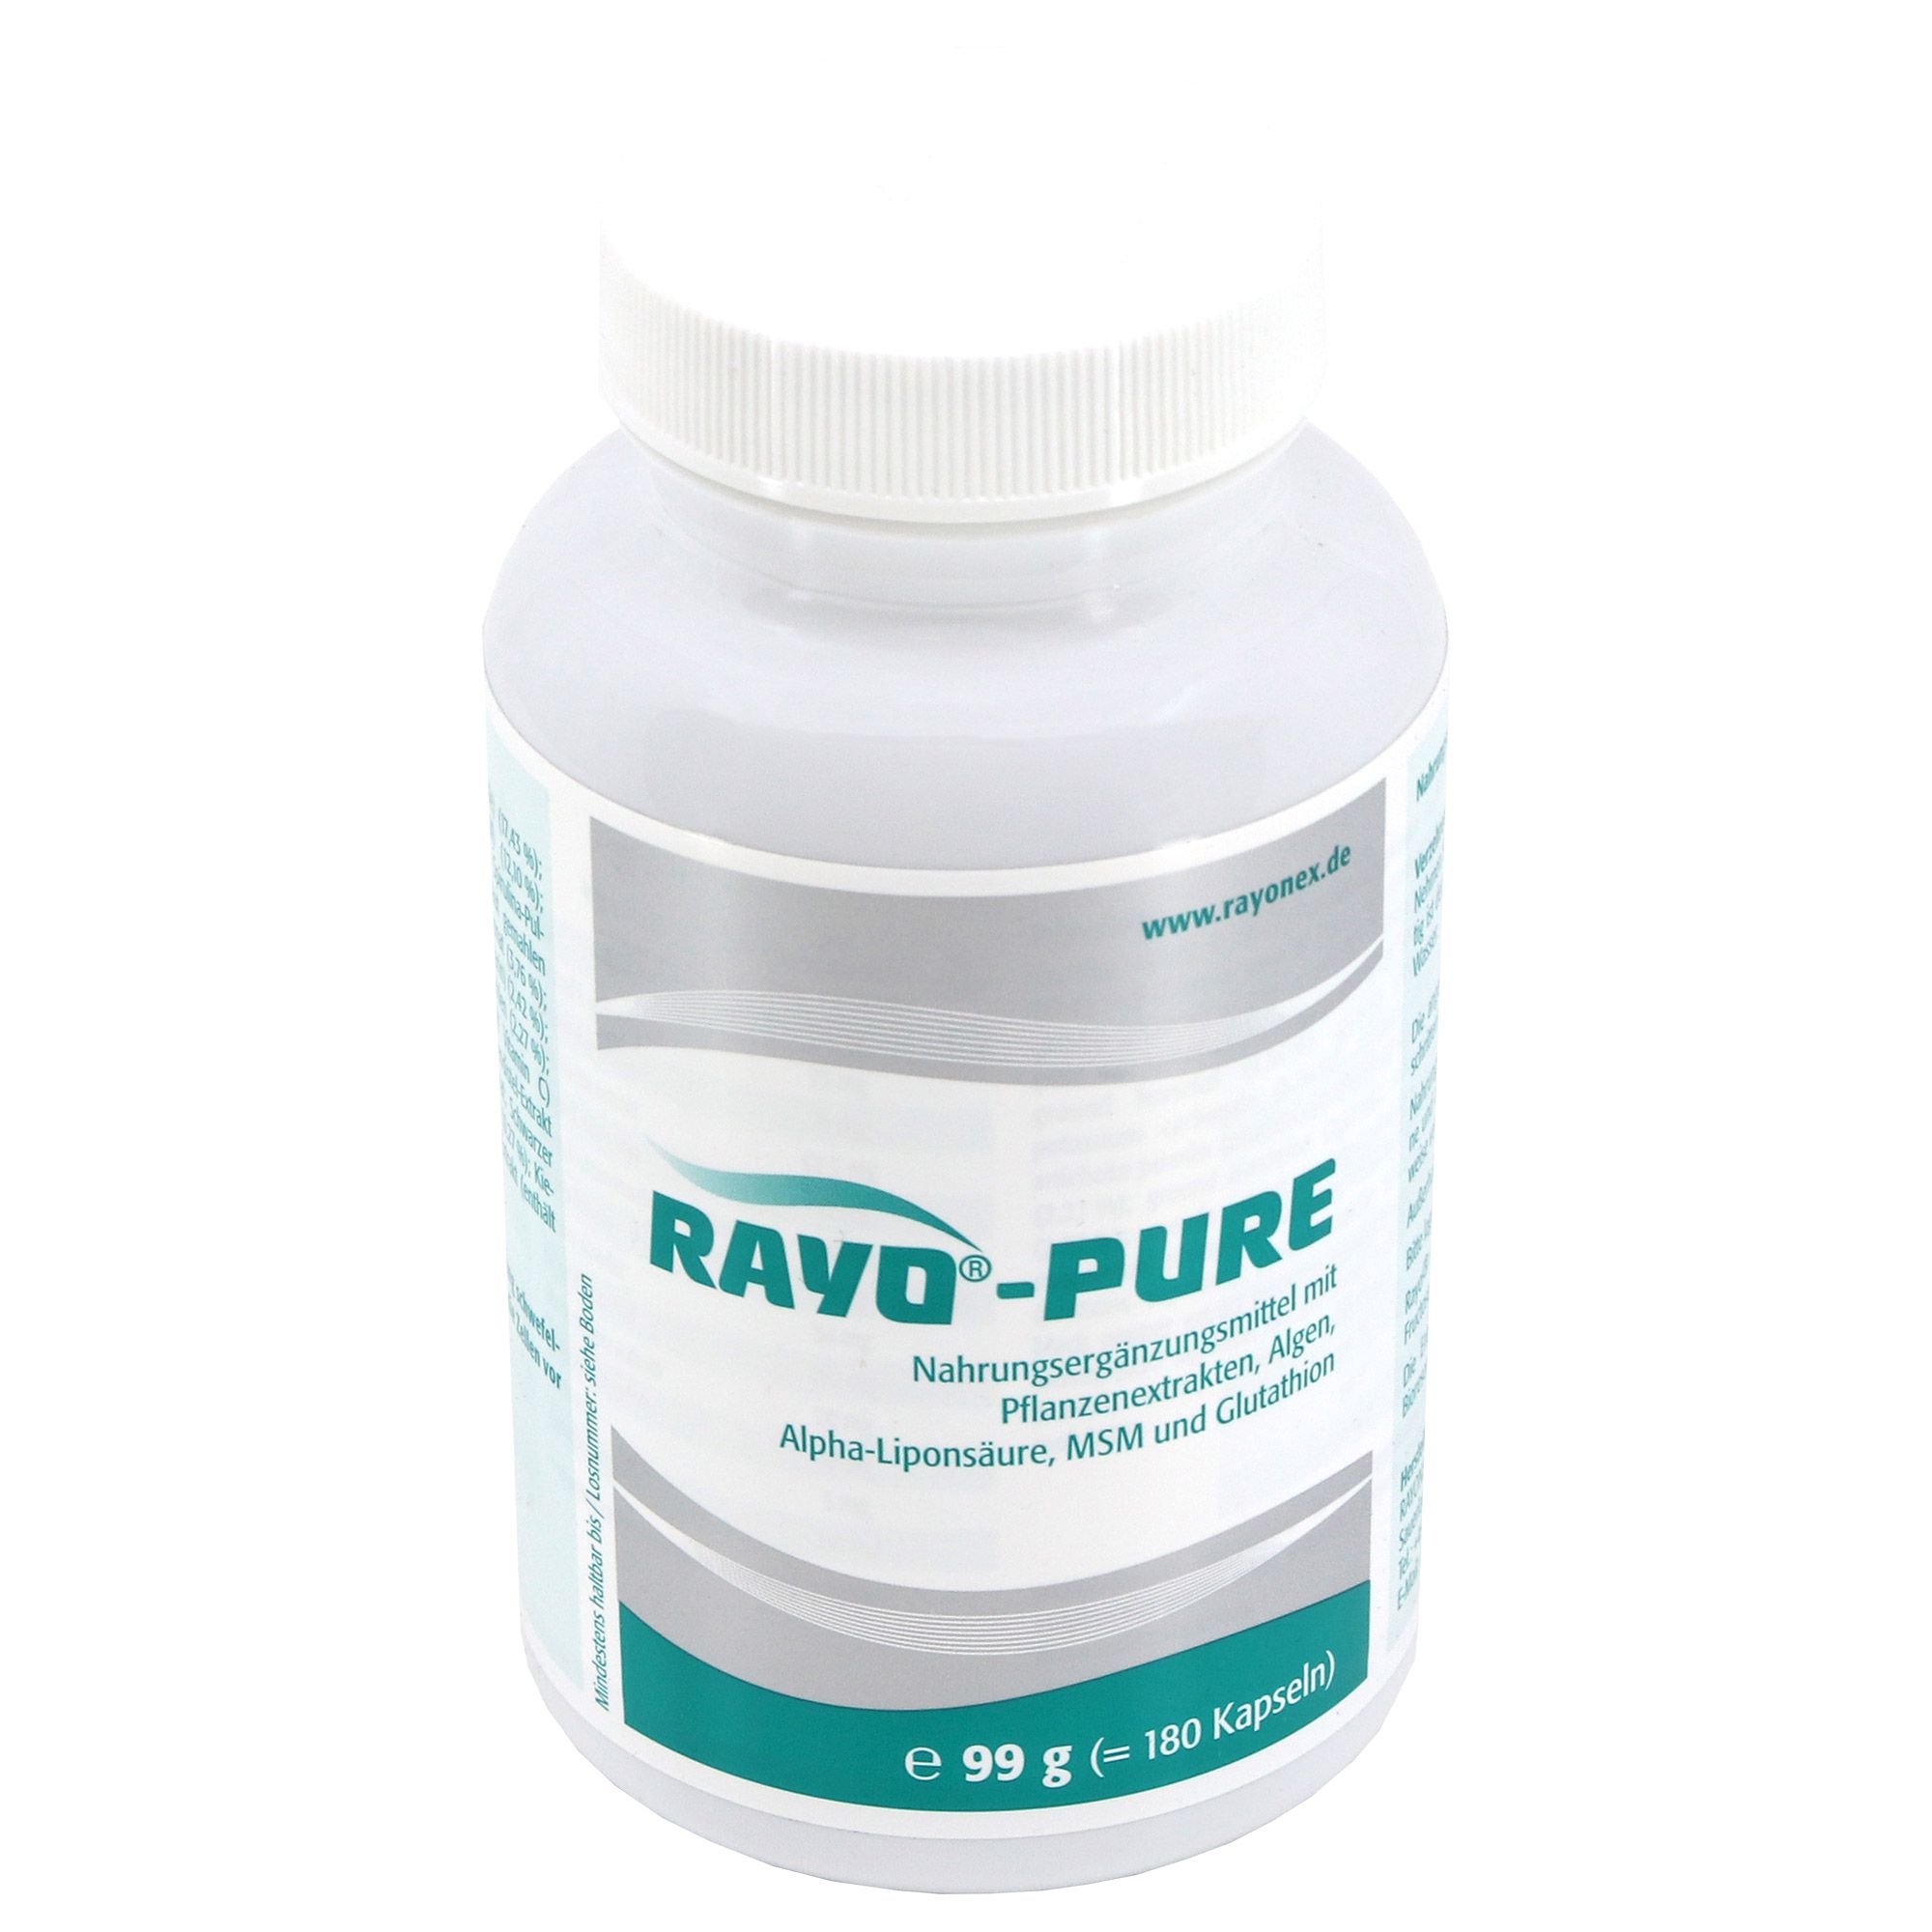 Rayo®-Pure